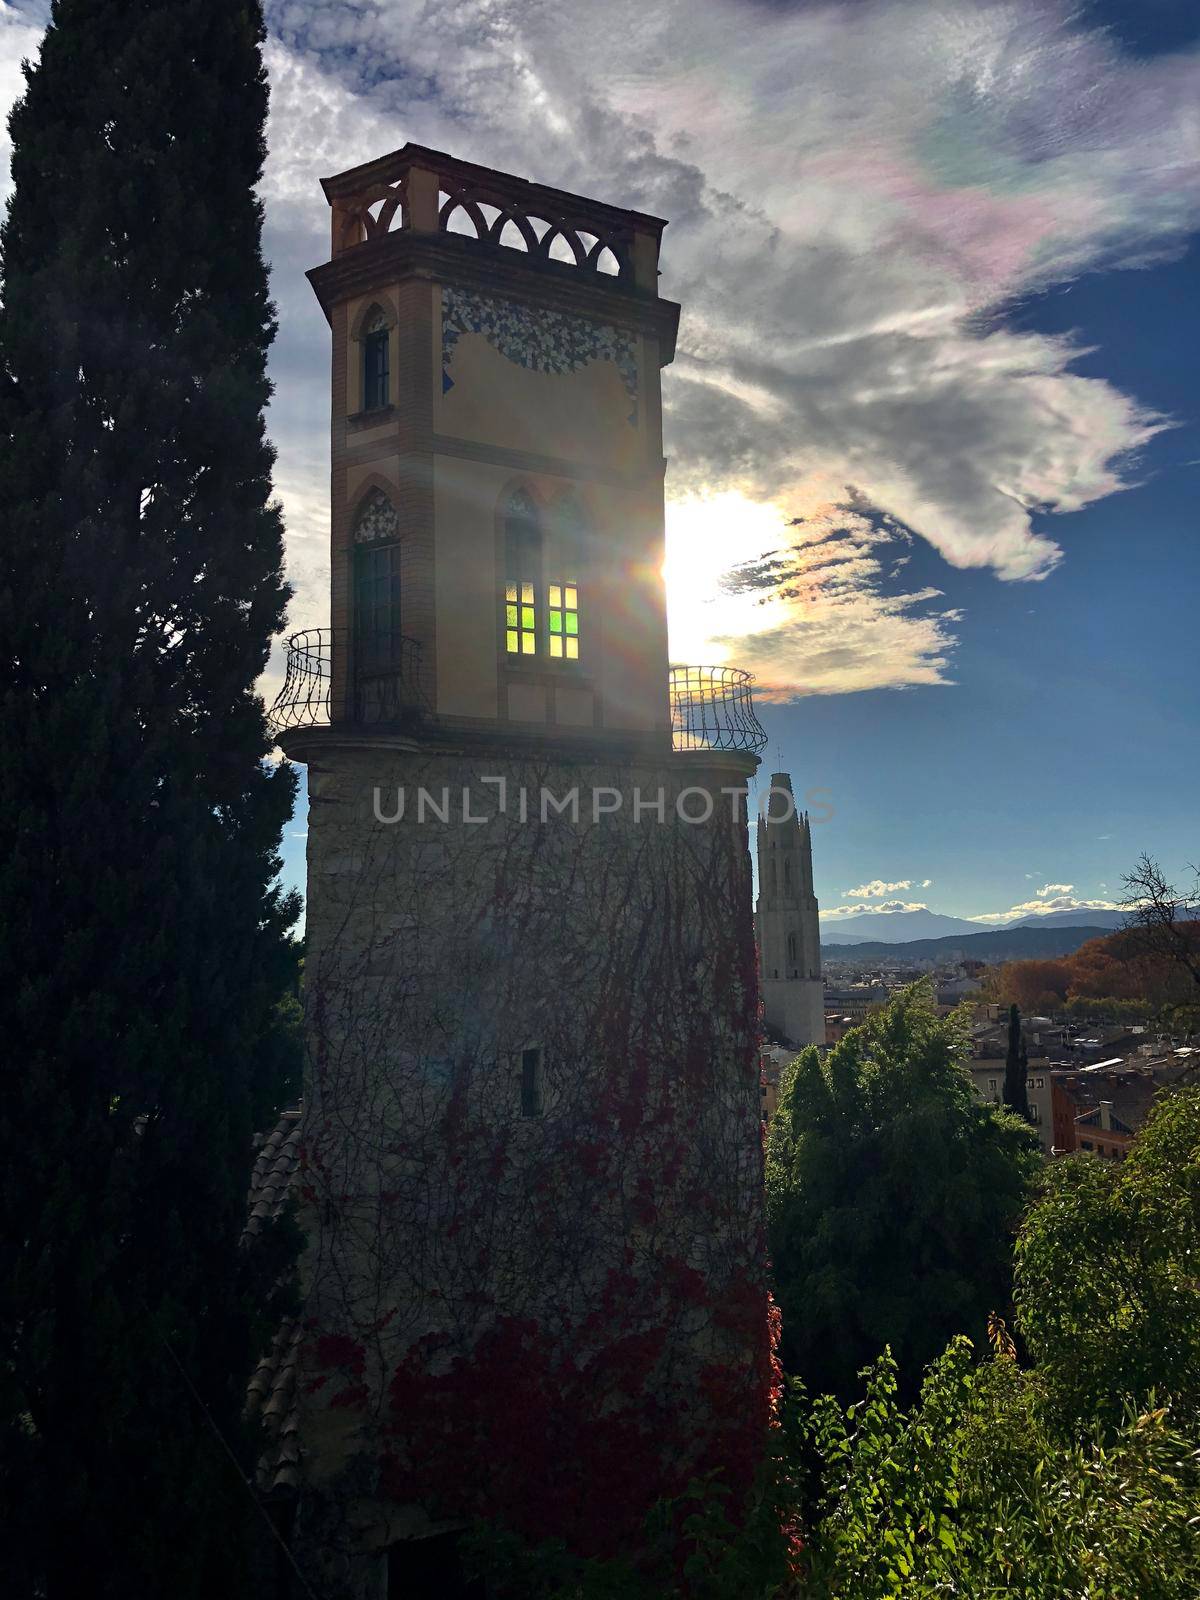 Santa Llucia church in Girona, Spain